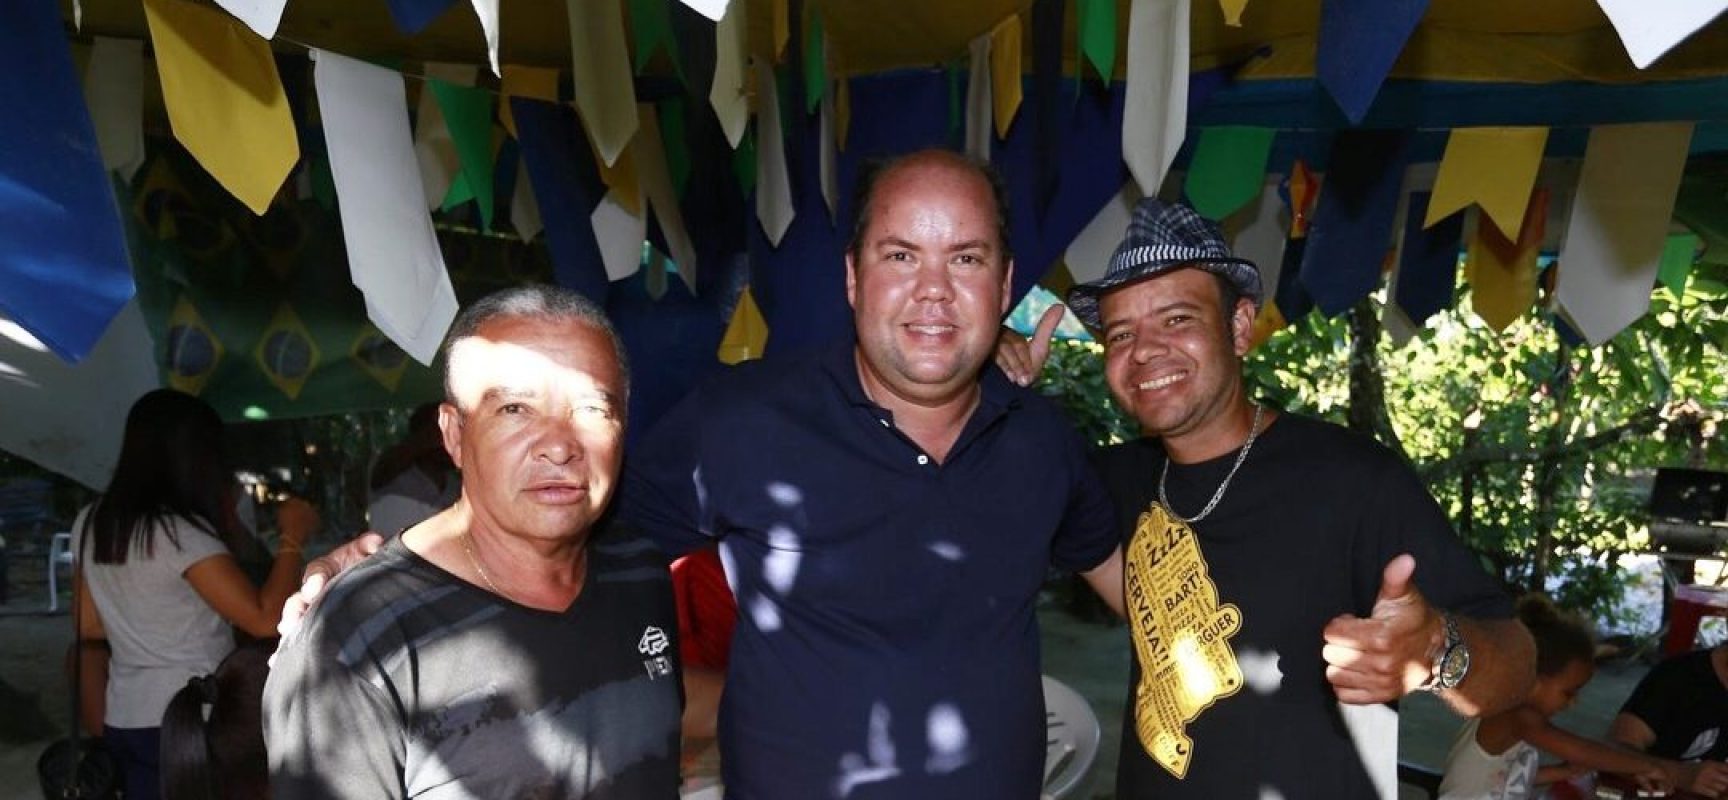 Candidato a Deputado Estadual Cacá Colchões visitou distritos de Vila Cachoeira e Japu